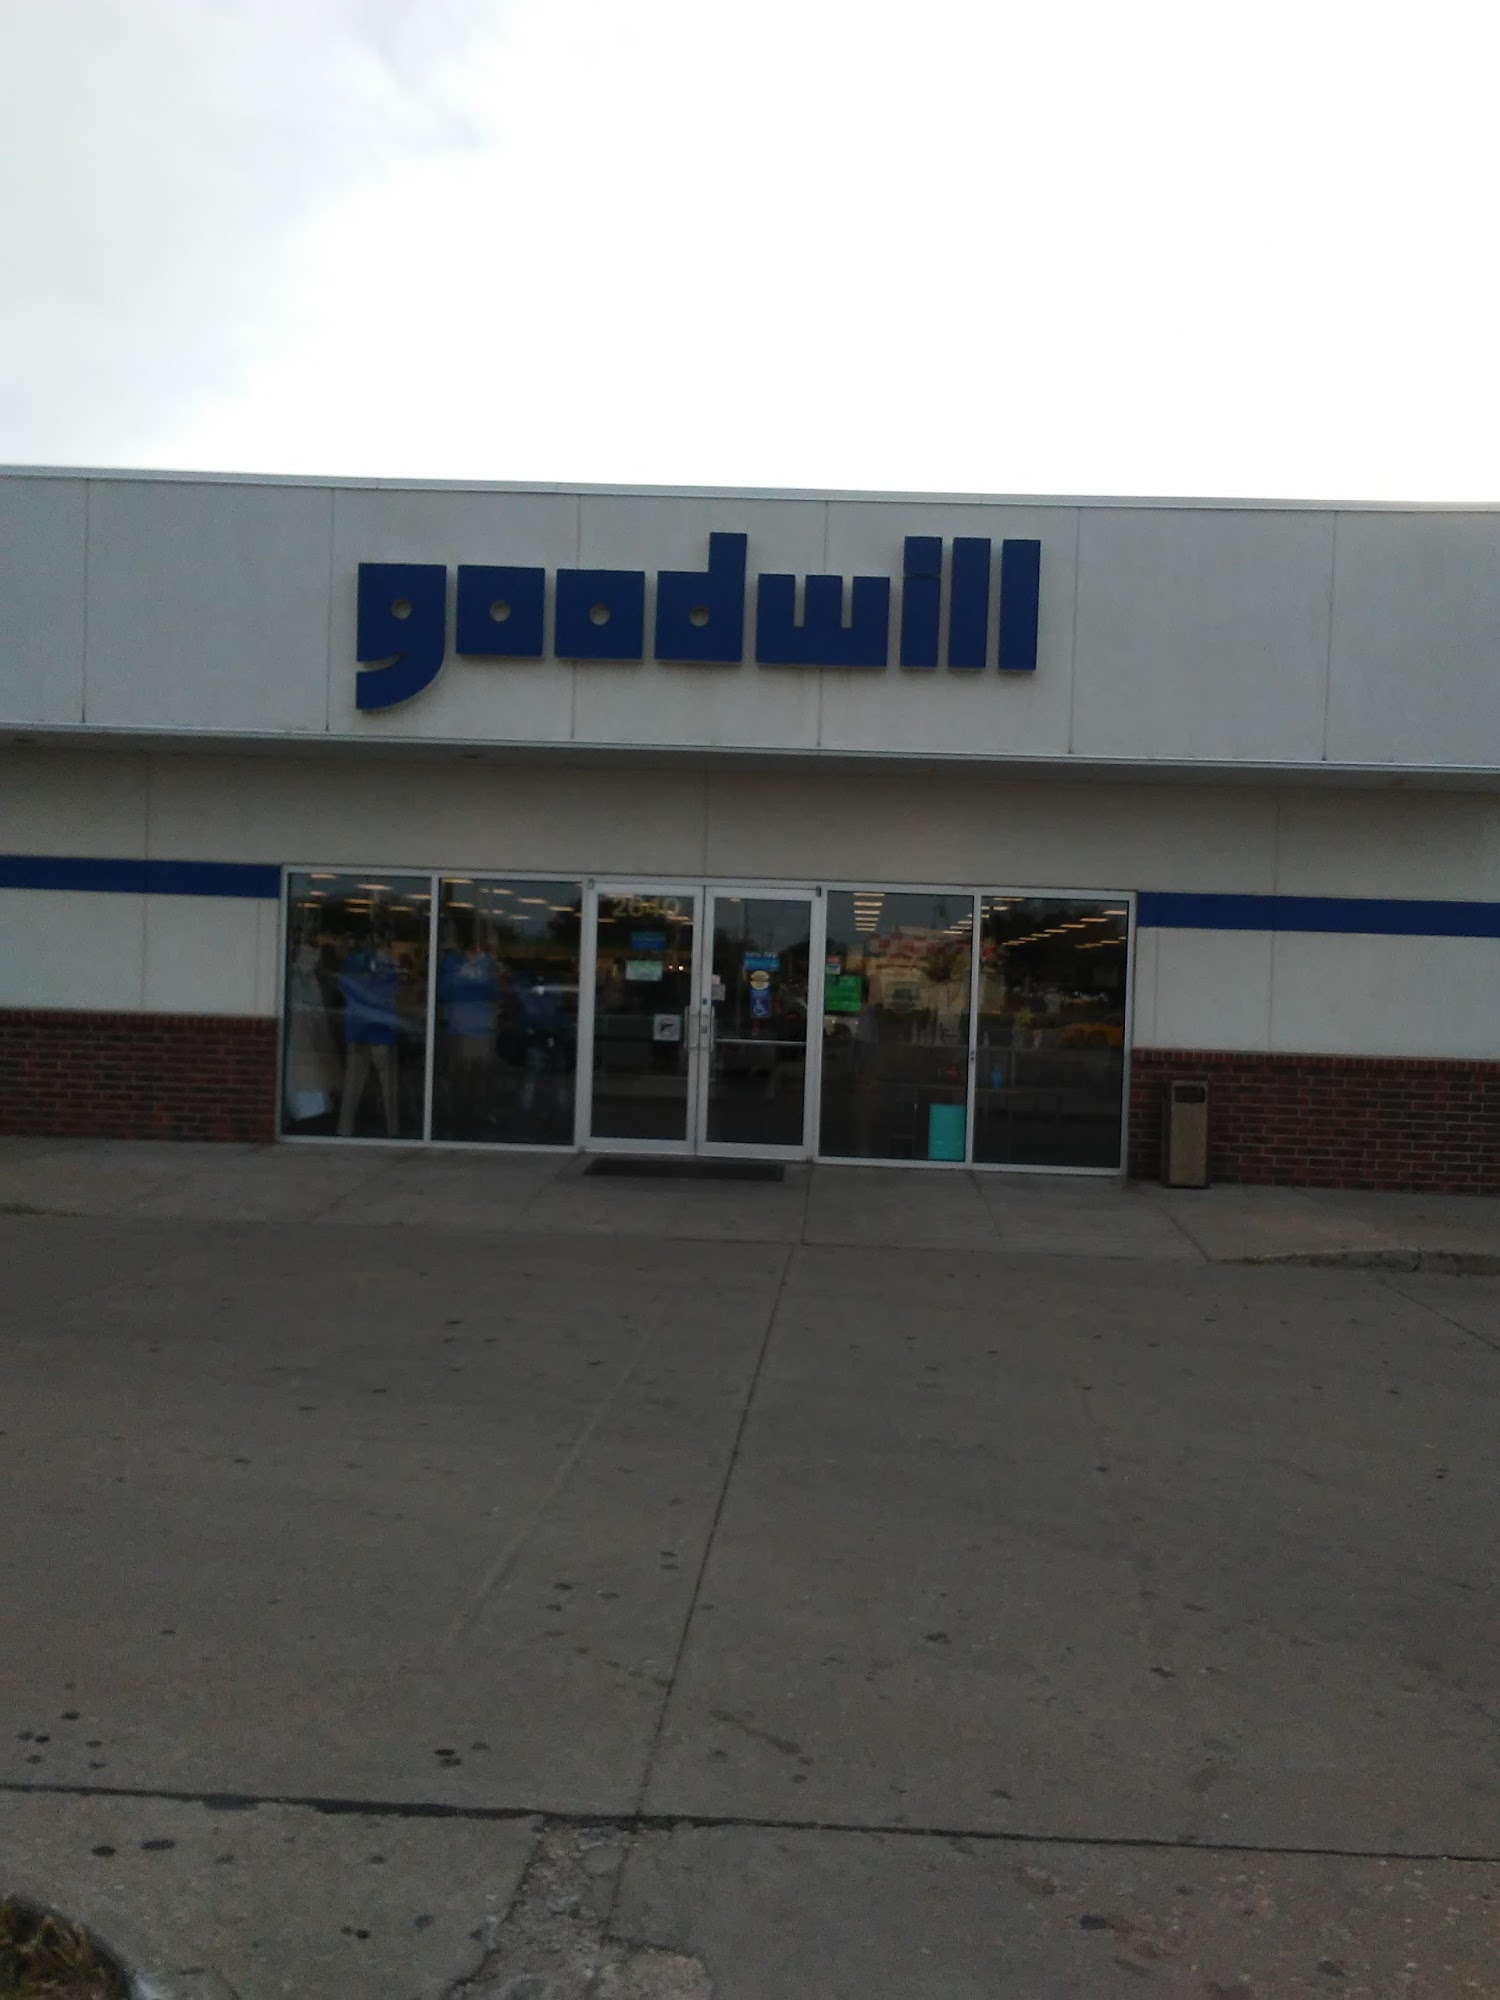 Goodwill Industries of Kansas